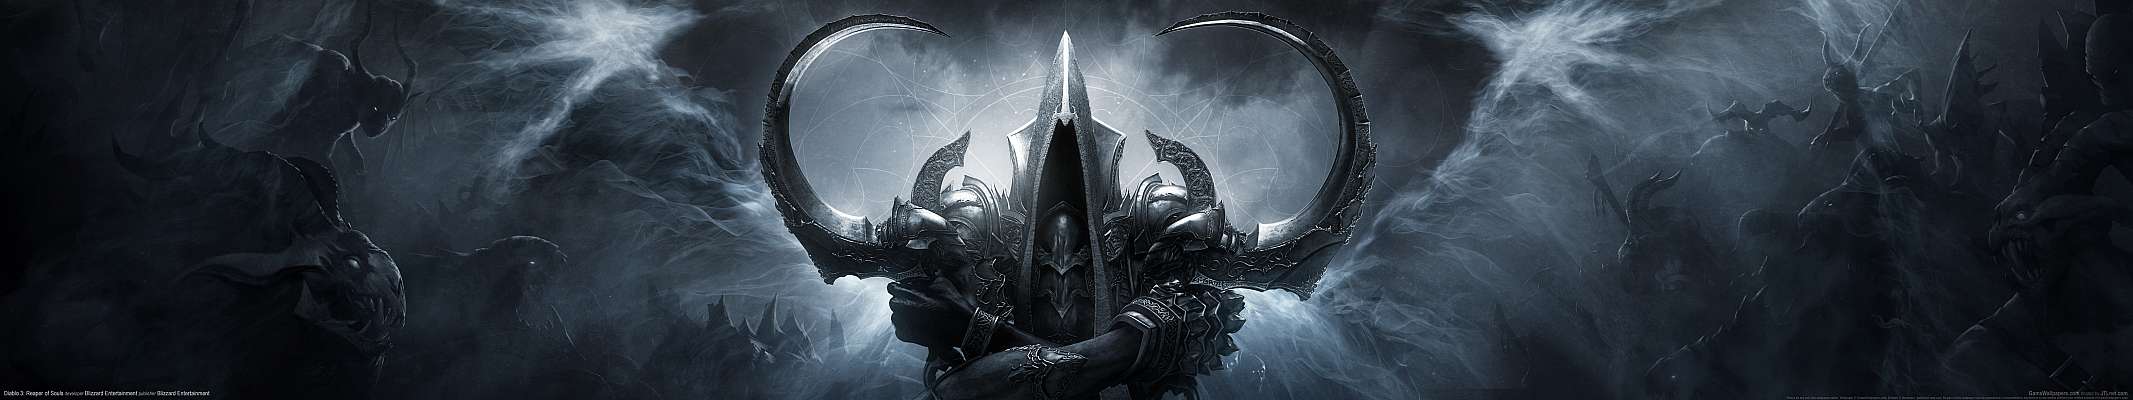 Diablo 3: Reaper of Souls triple screen wallpaper or background